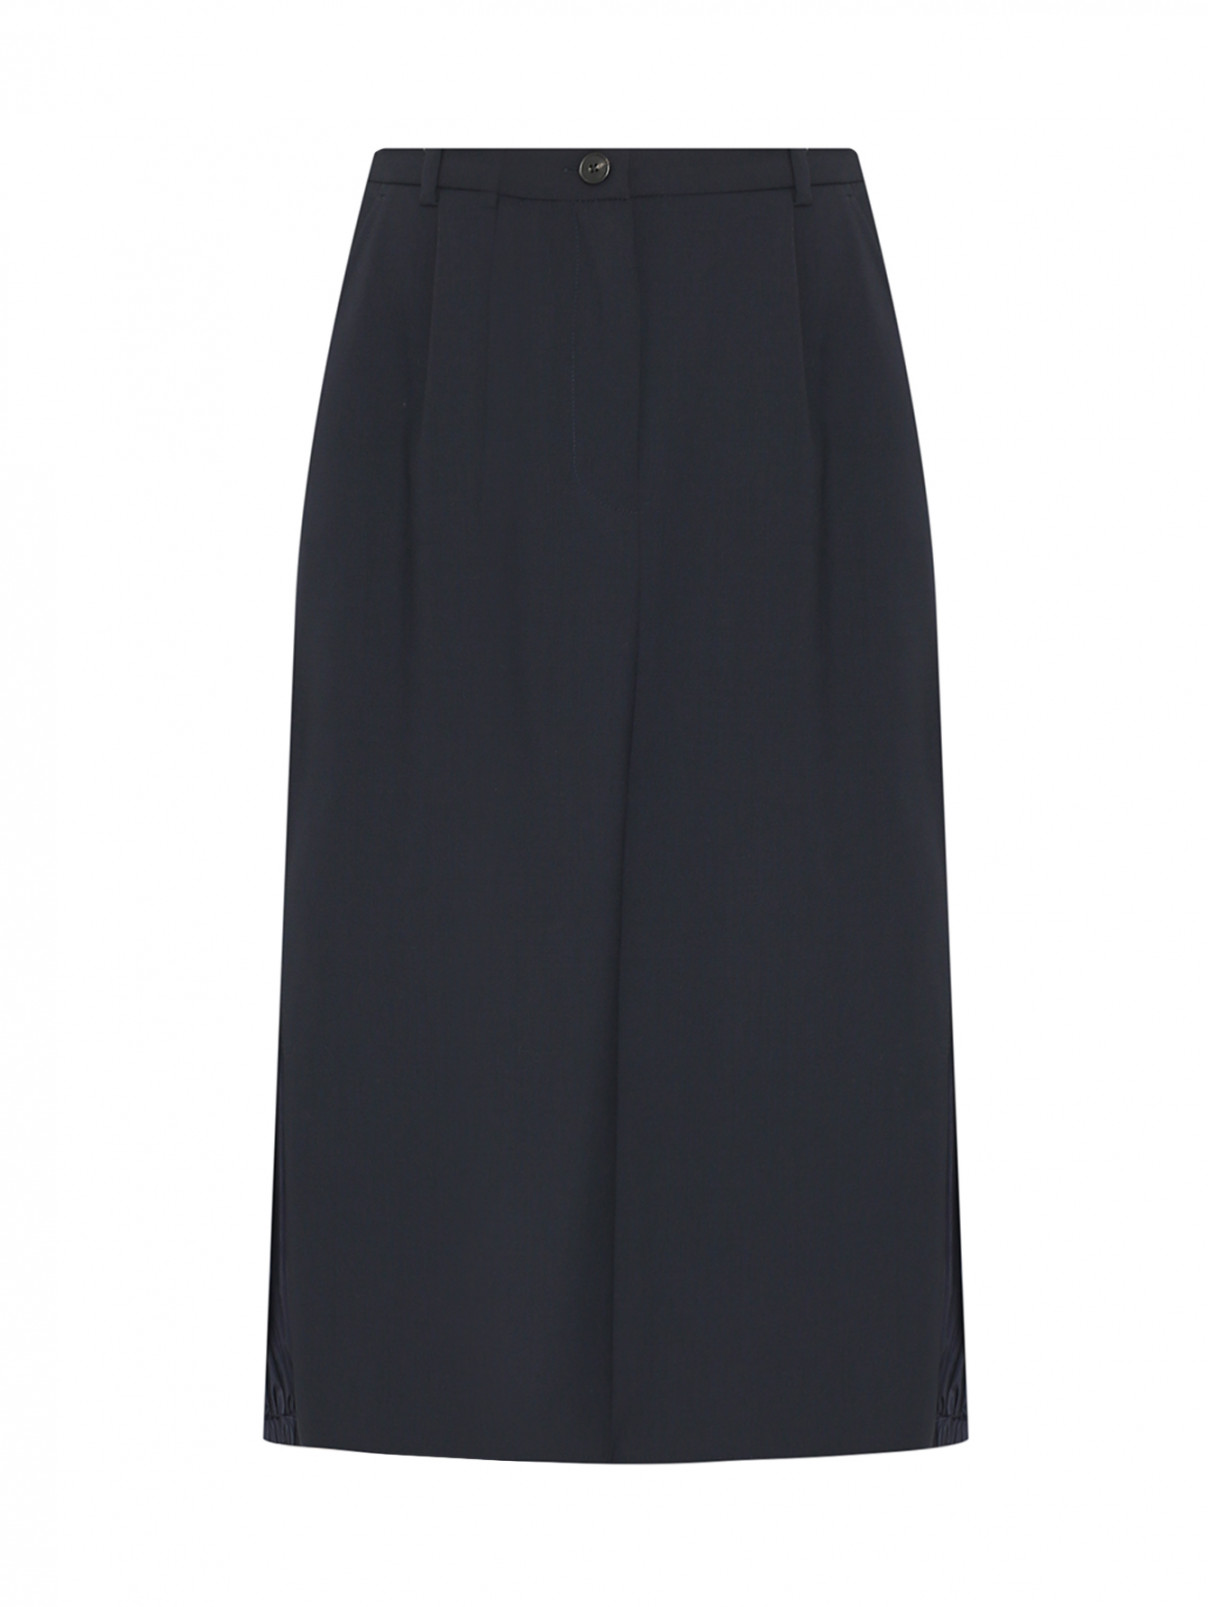 Комбинированная юбка-миди из шерсти со вставками Weekend Max Mara  –  Общий вид  – Цвет:  Синий